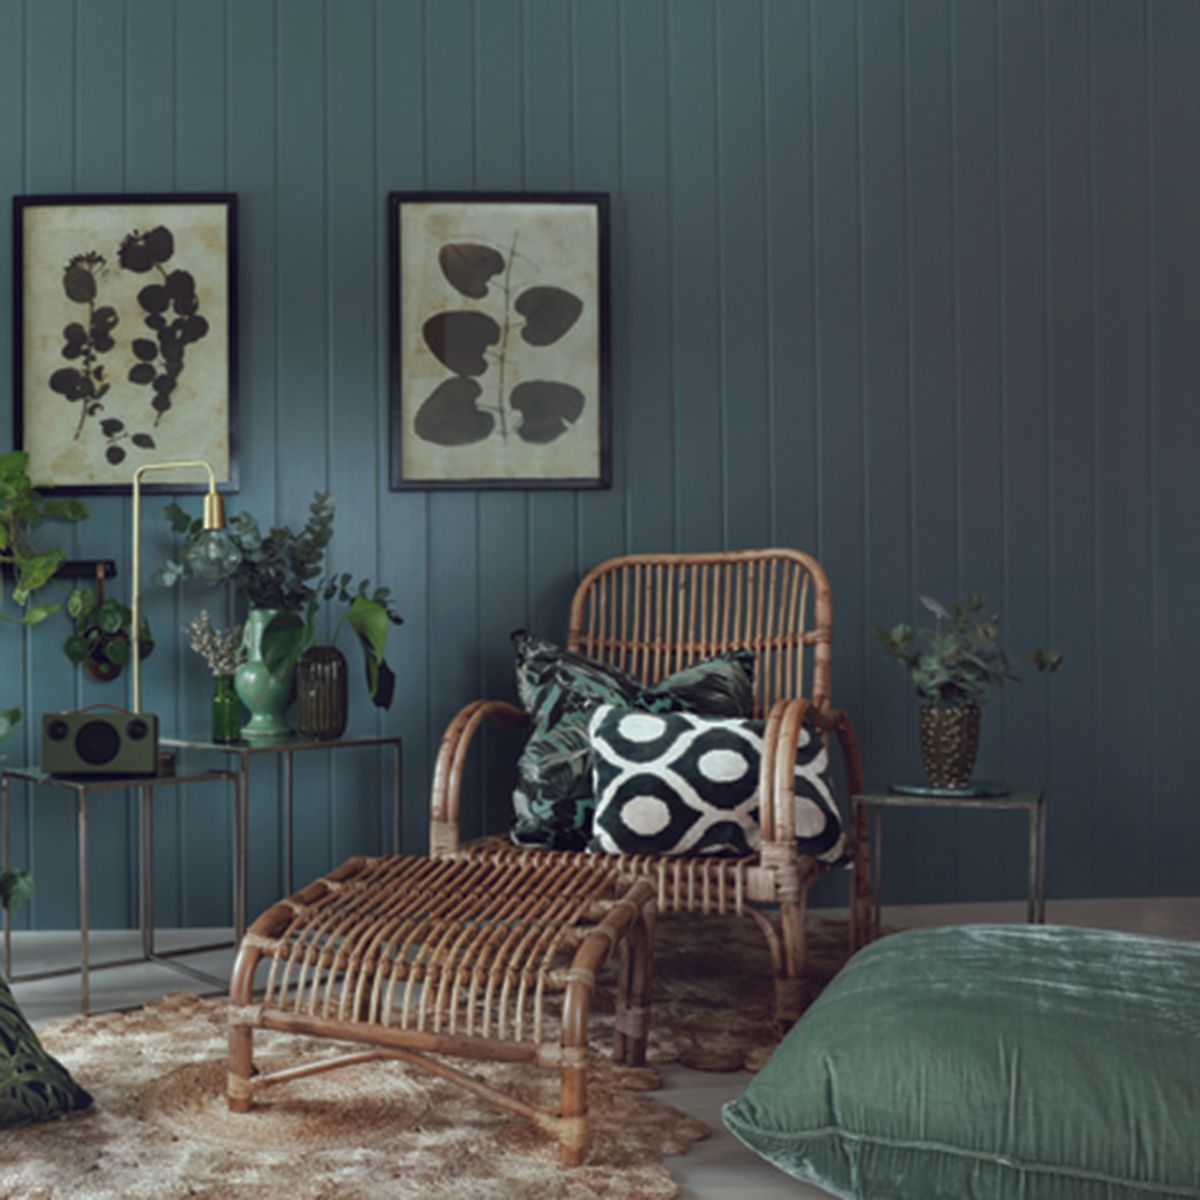 Blågrønne veggplater i MDF i stue med bambuslenestol og bord.